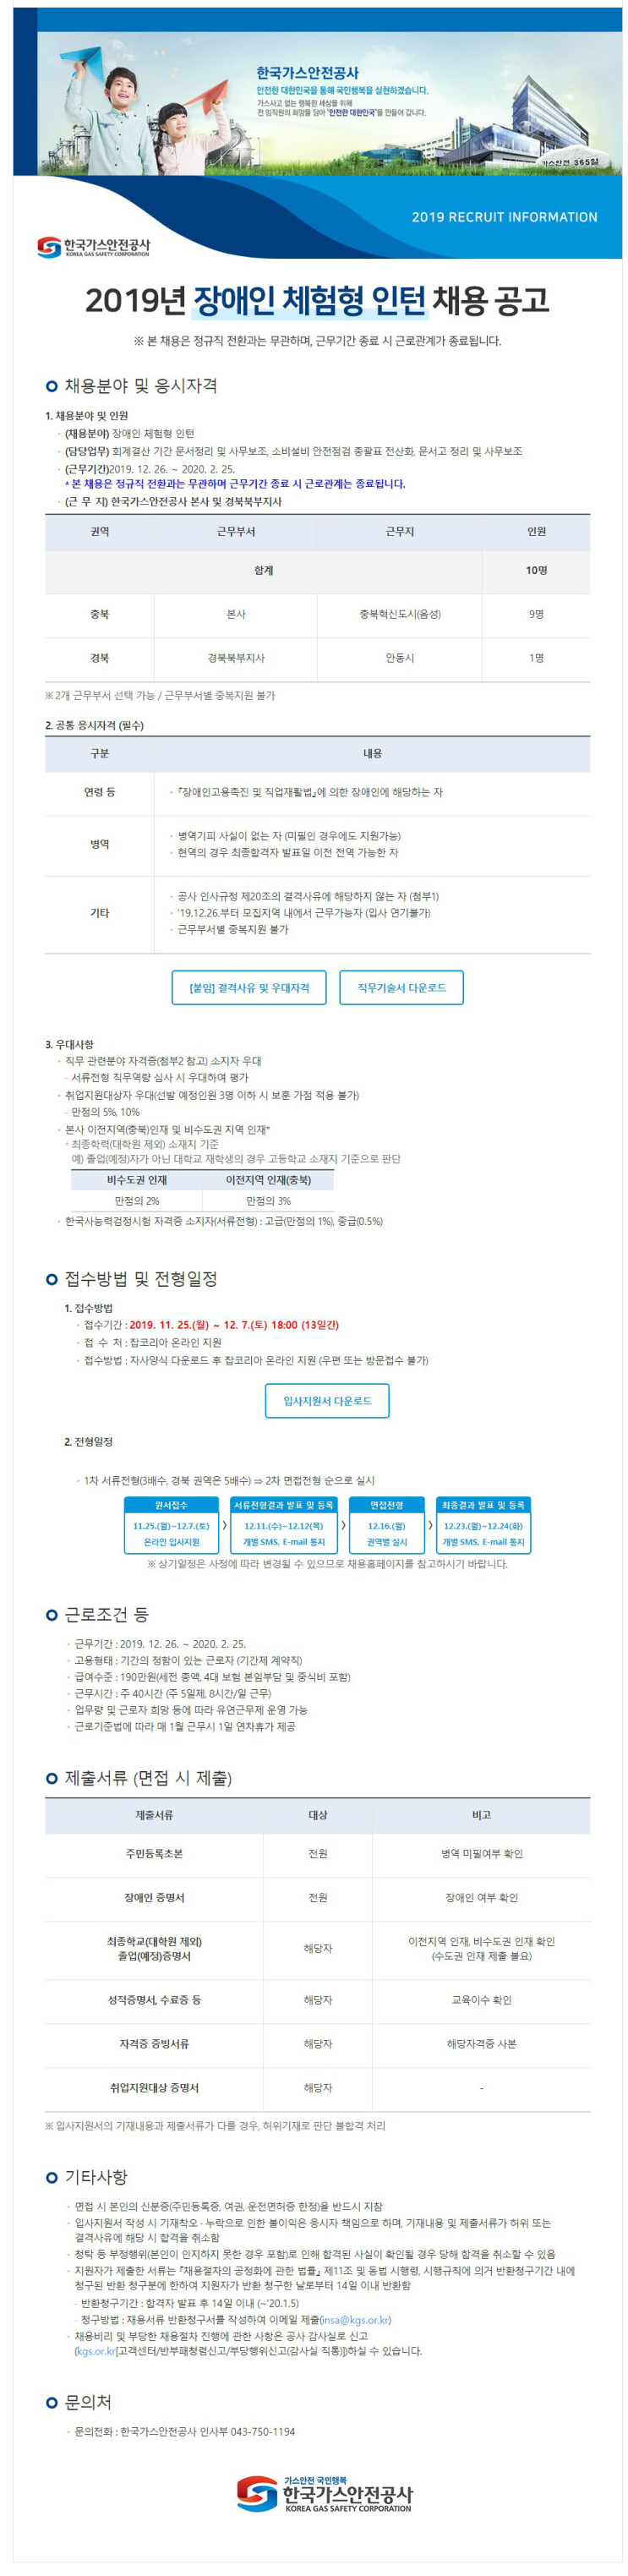 [채용][한국가스안전공사] 2019년 장애인 체험형 인턴 채용 공고 안내